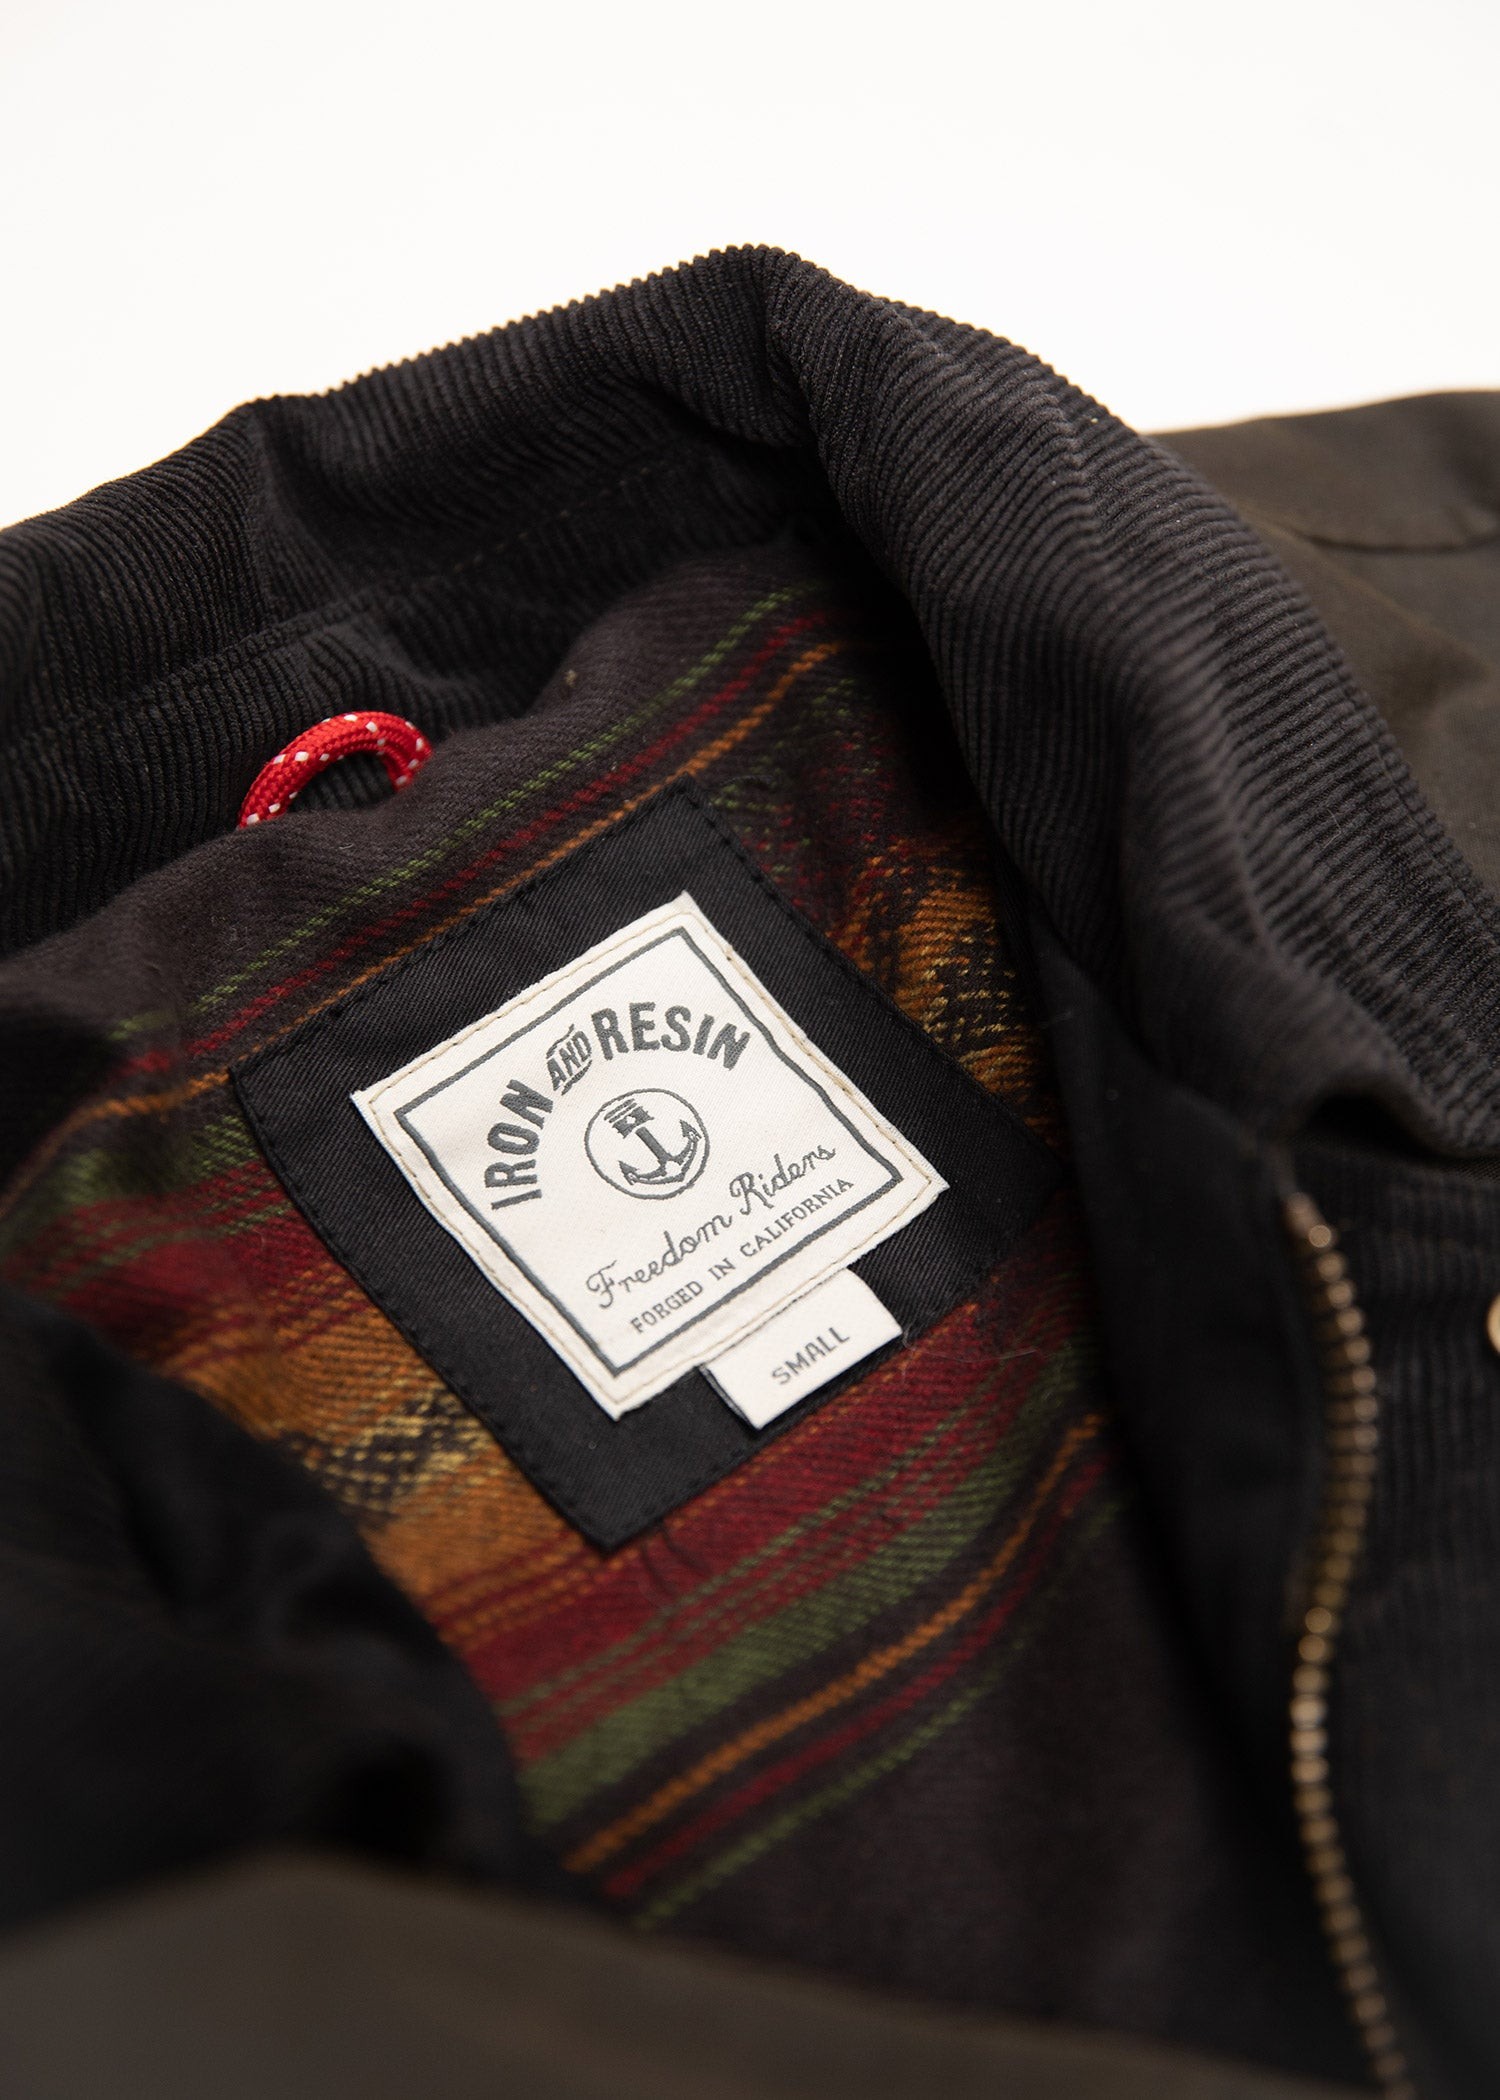 Grant jacket - Veste textile homme - 